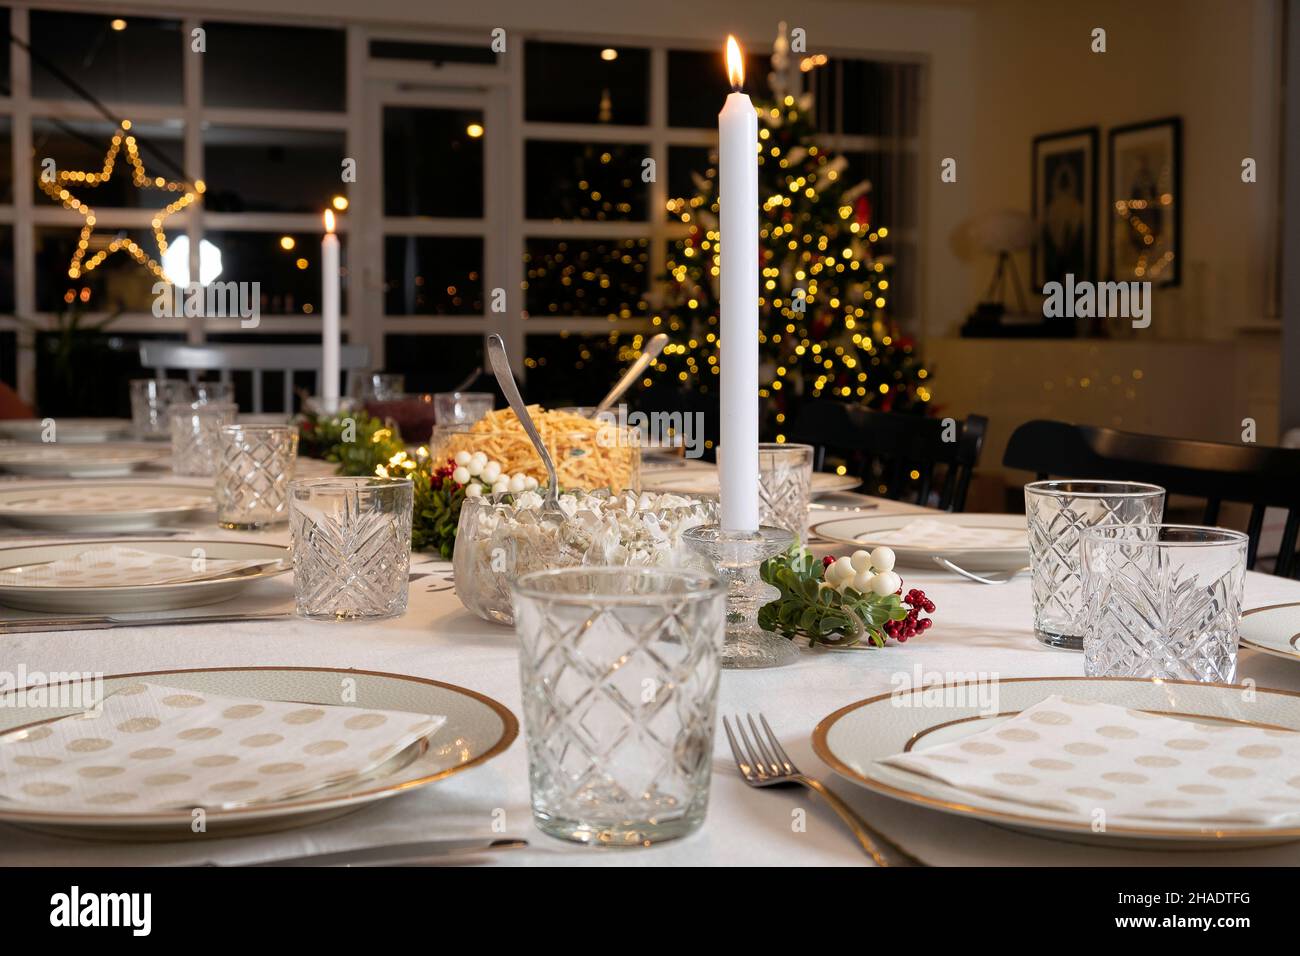 Un vrai dîner de noël se préparer avec un arbre de noël en arrière-plan dans une maison scandinave Banque D'Images